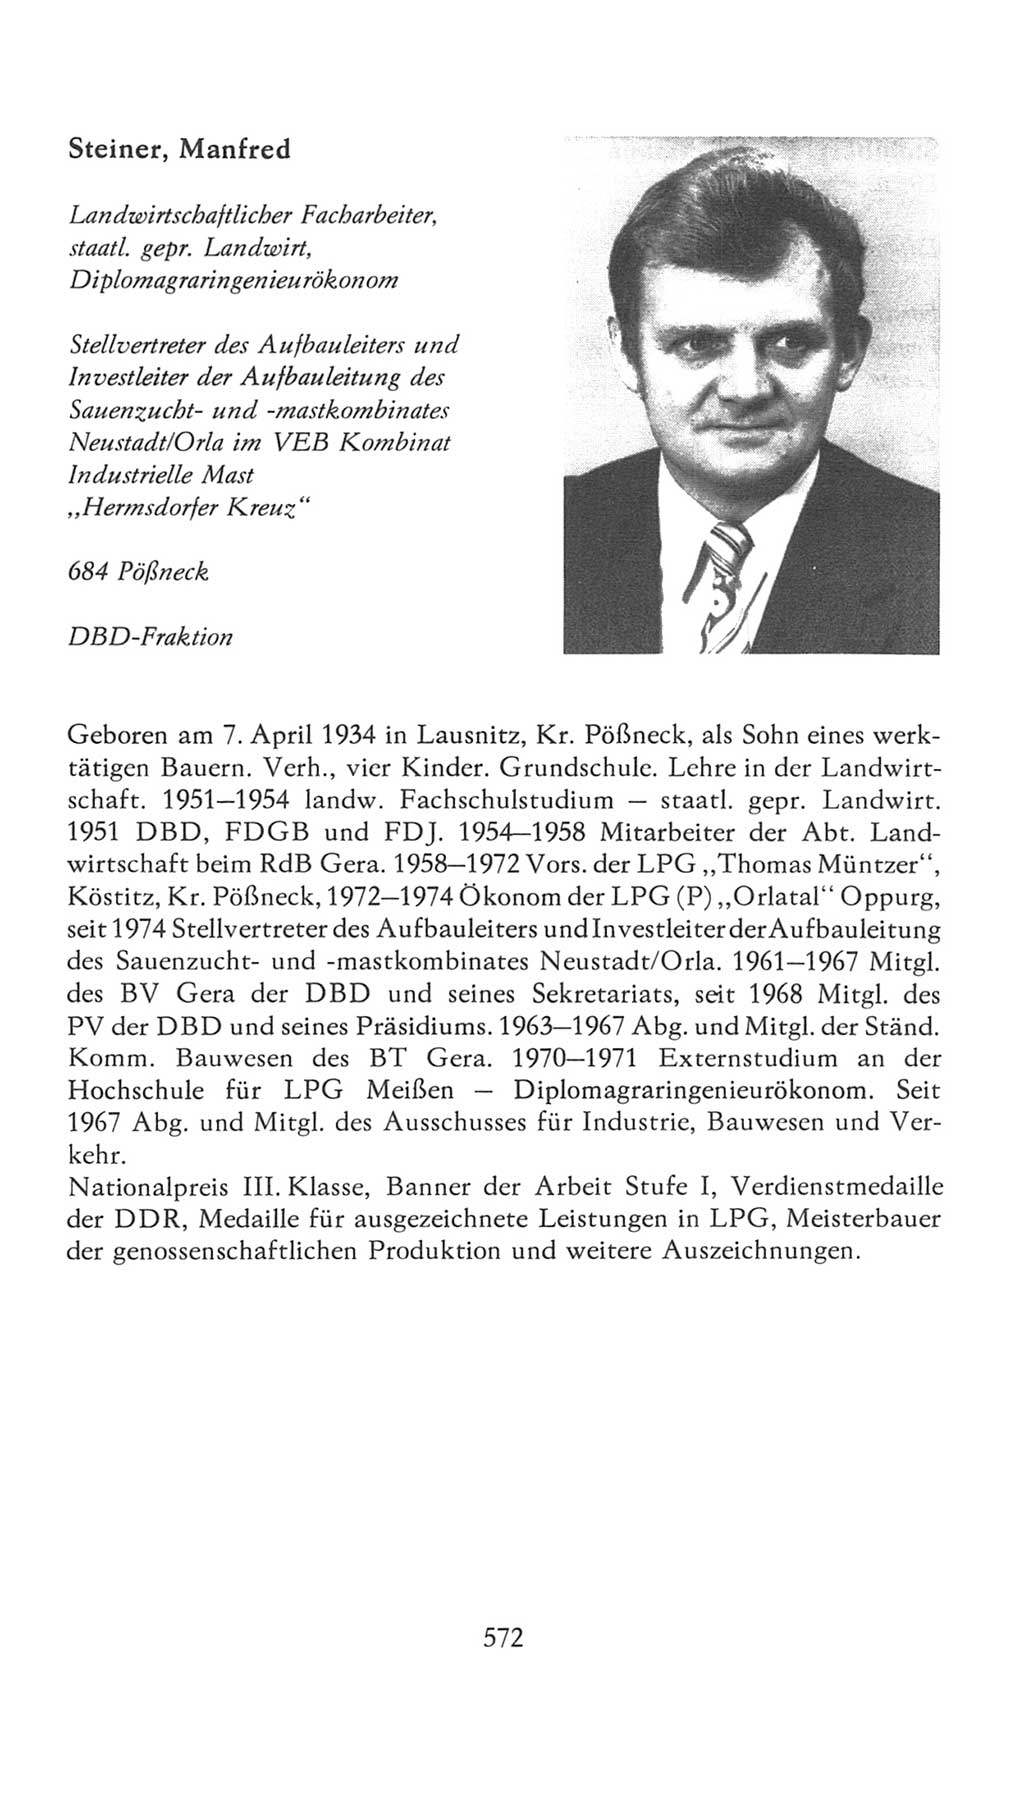 Volkskammer (VK) der Deutschen Demokratischen Republik (DDR), 7. Wahlperiode 1976-1981, Seite 572 (VK. DDR 7. WP. 1976-1981, S. 572)